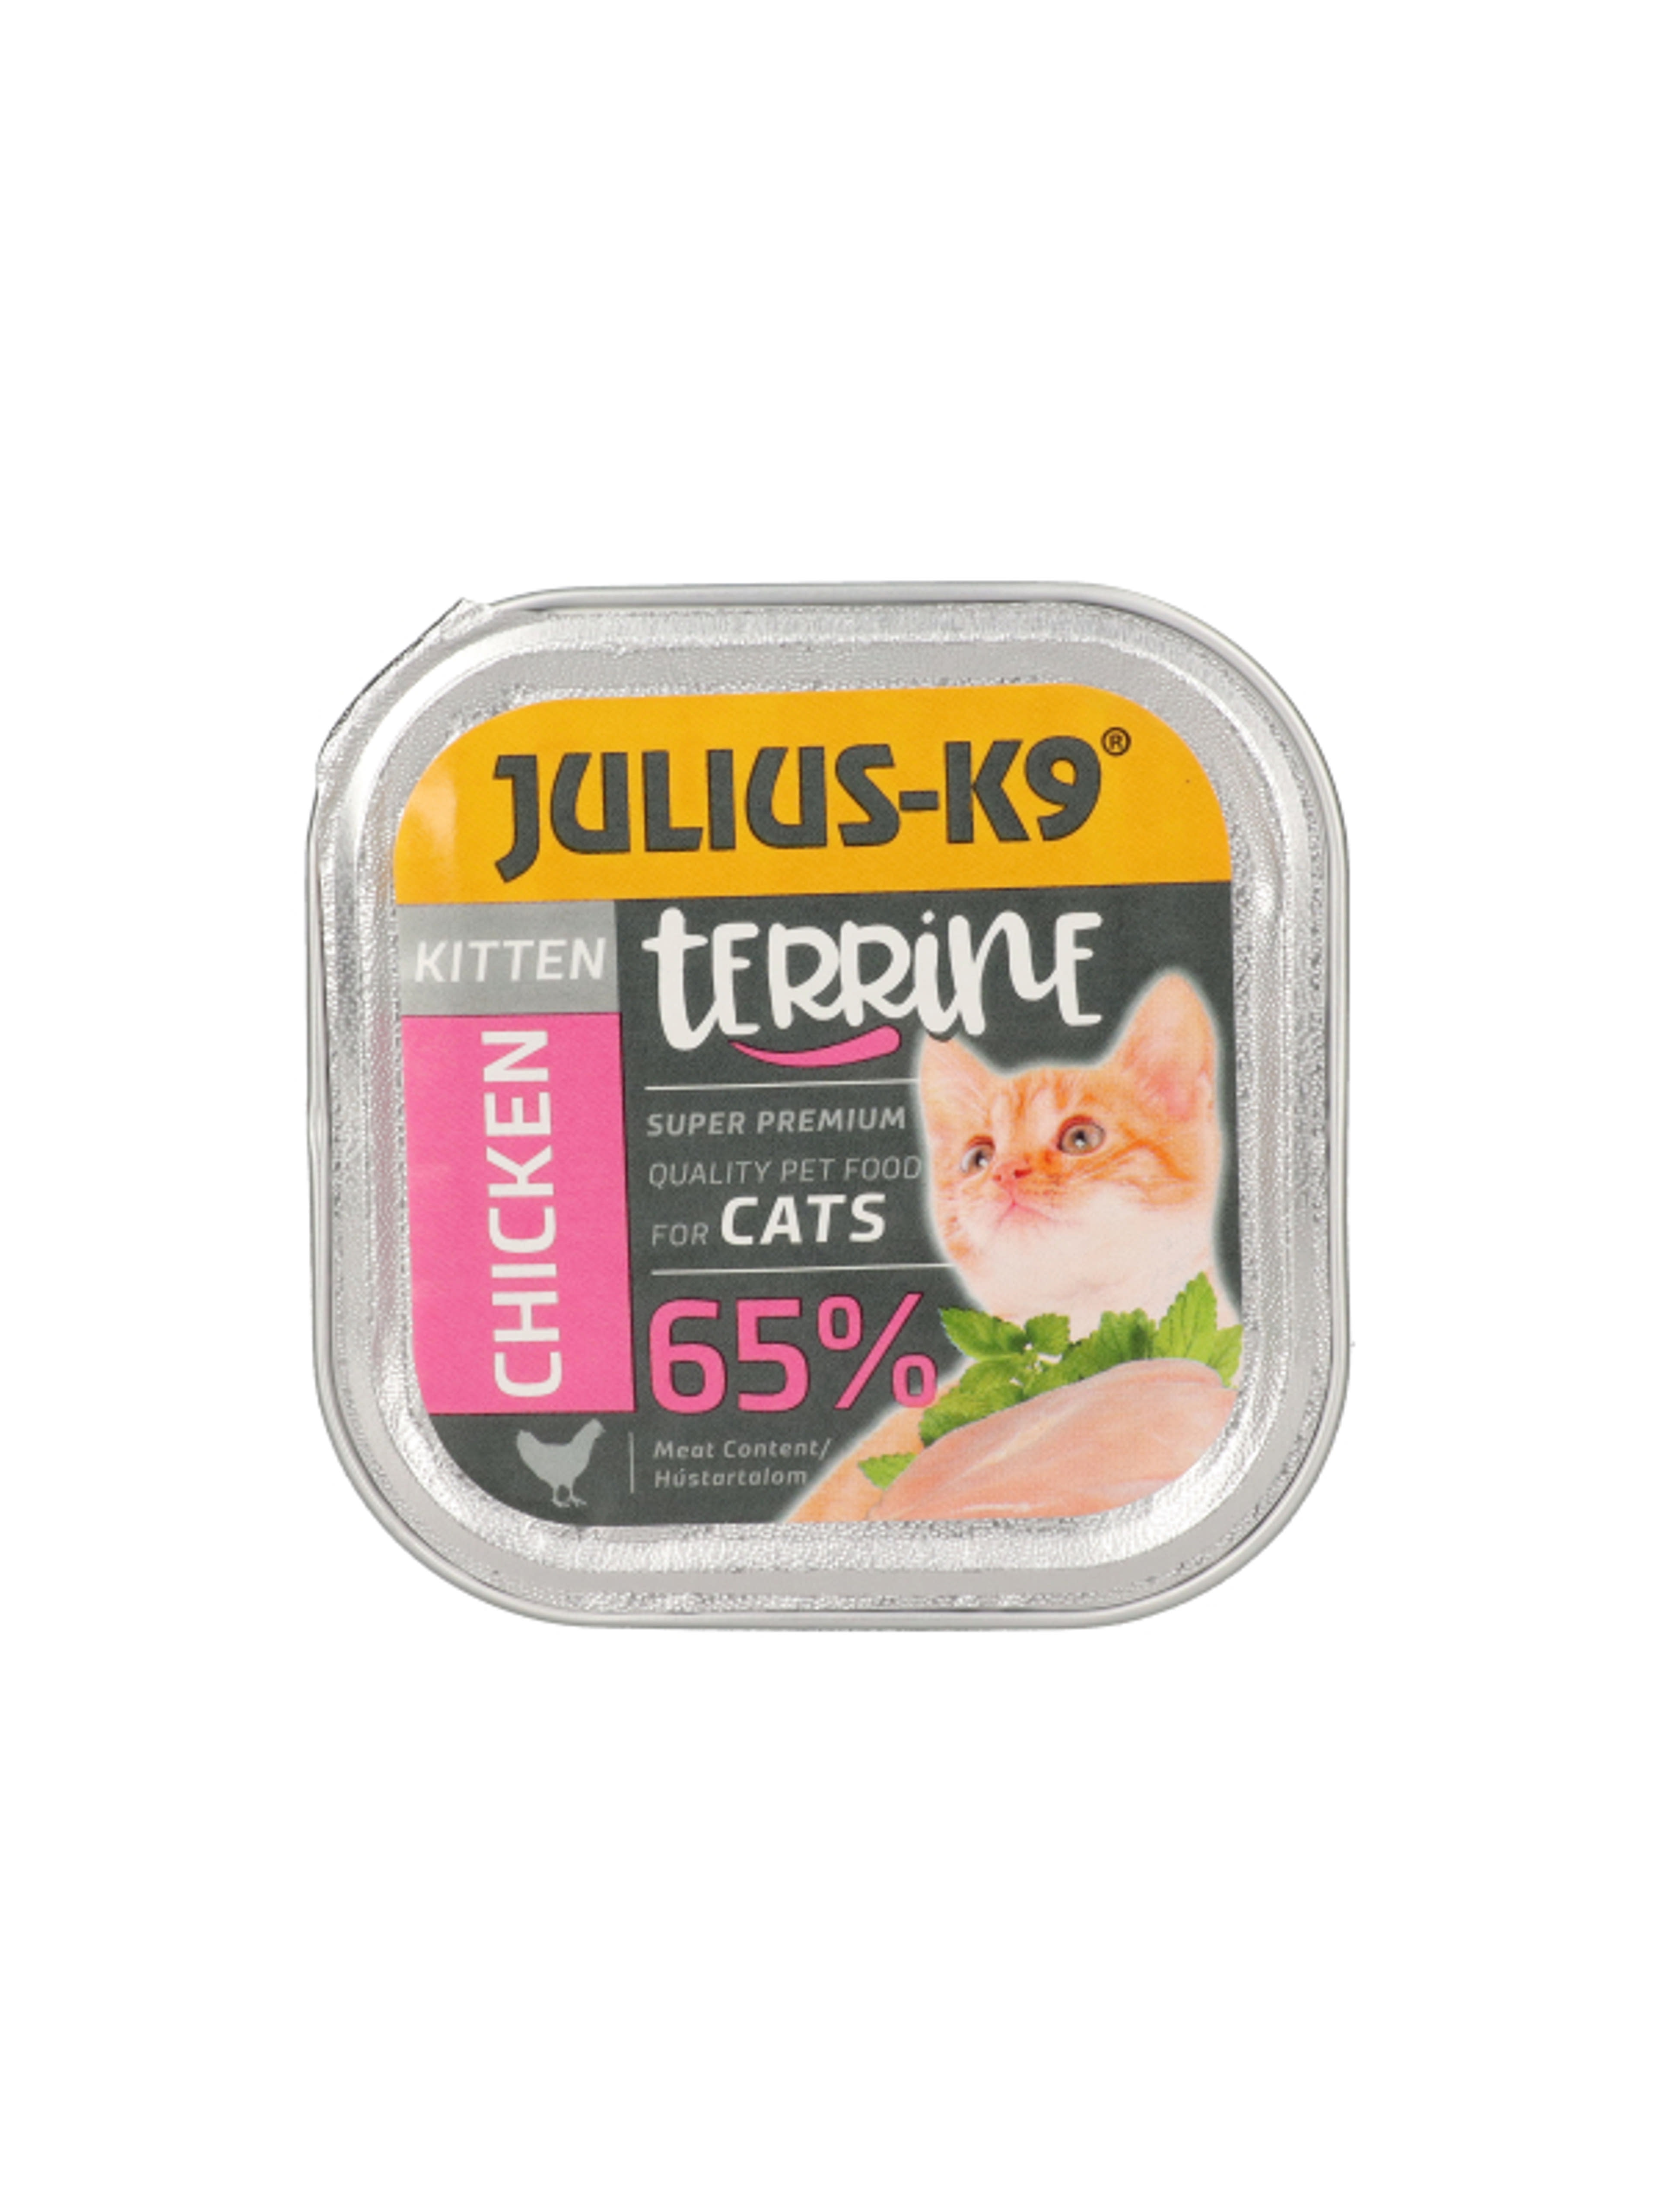 Julis-K9 alutál macskáknak, kitten csirke - 100 g-1